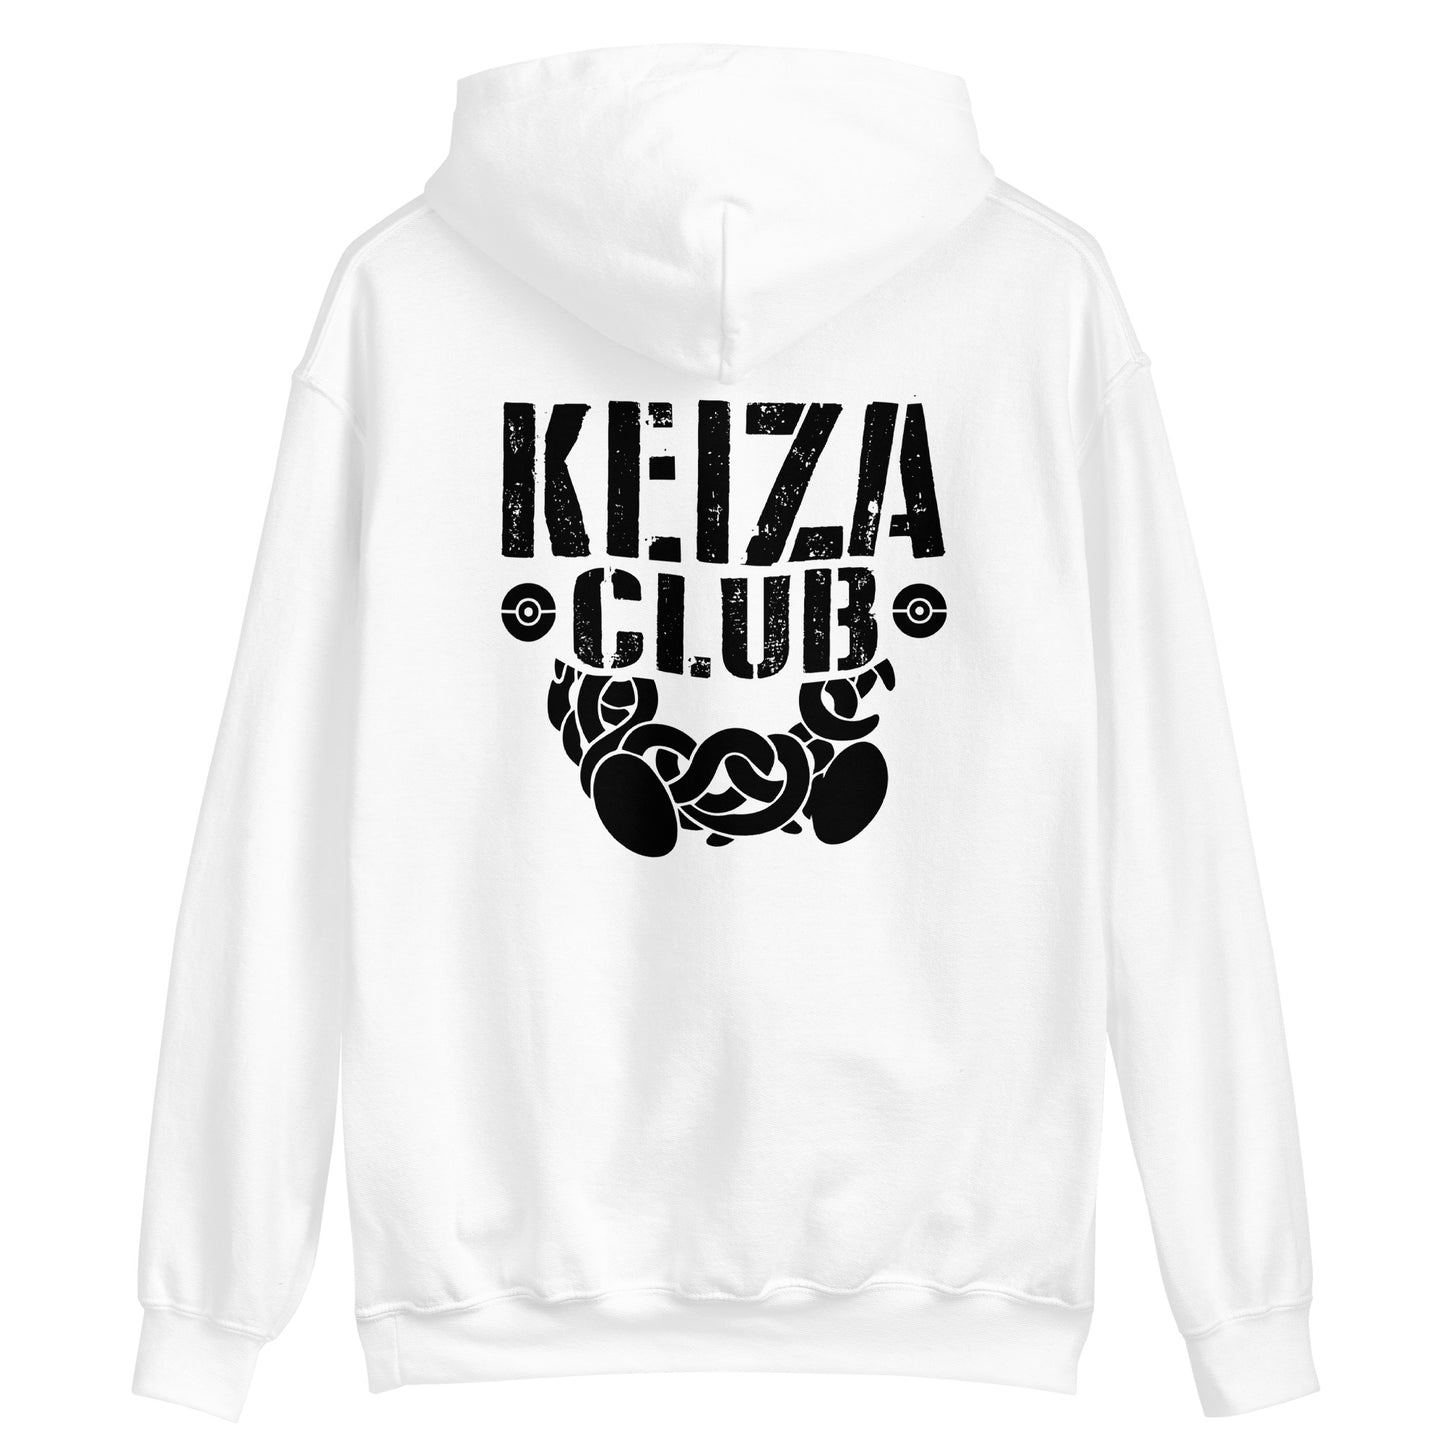 Keizaron - Unisex Hoodie - Keiza Club